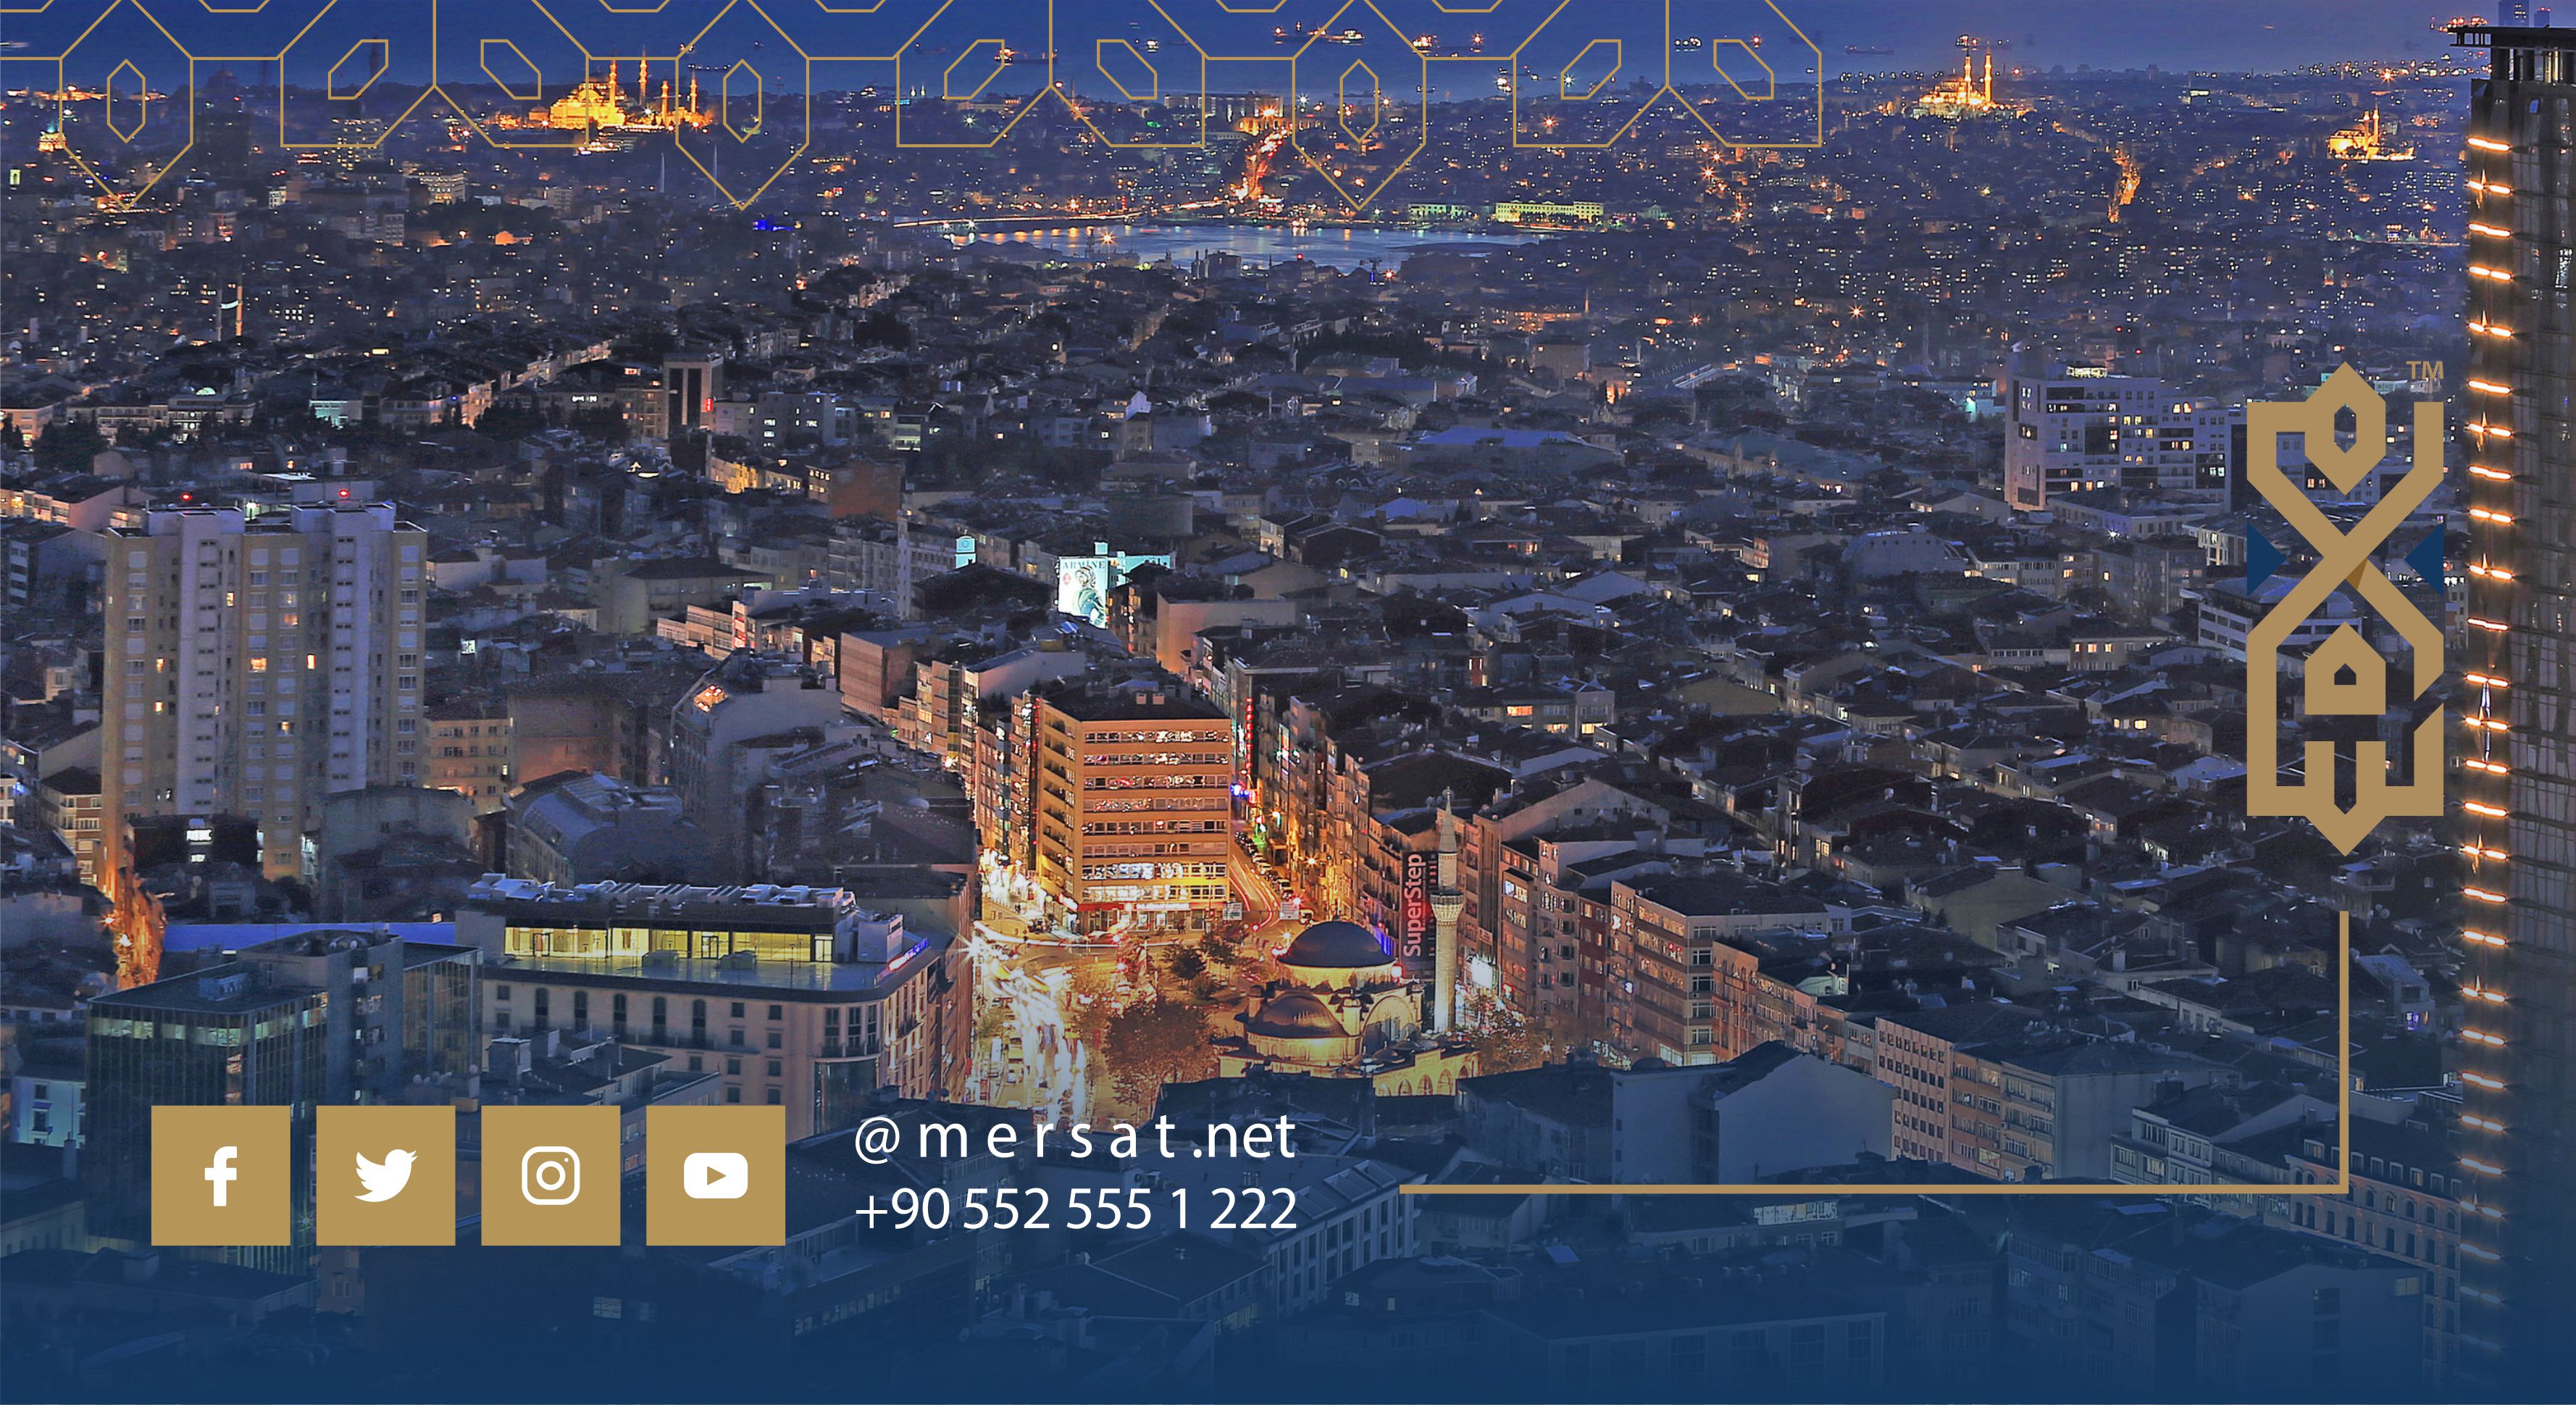 şişli is the commercial center of Istanbul